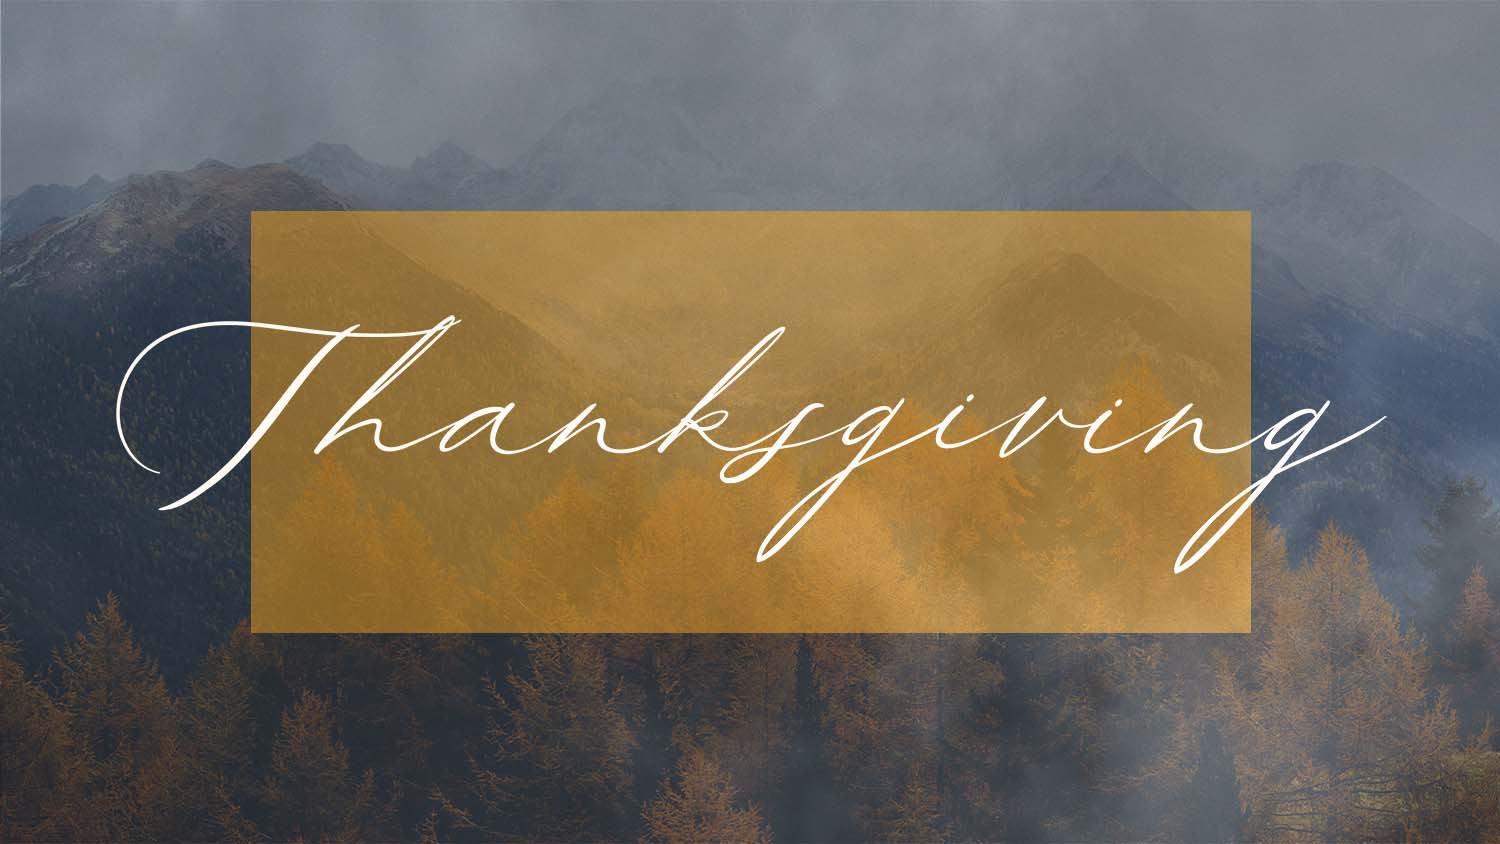 Thanksgiving Image